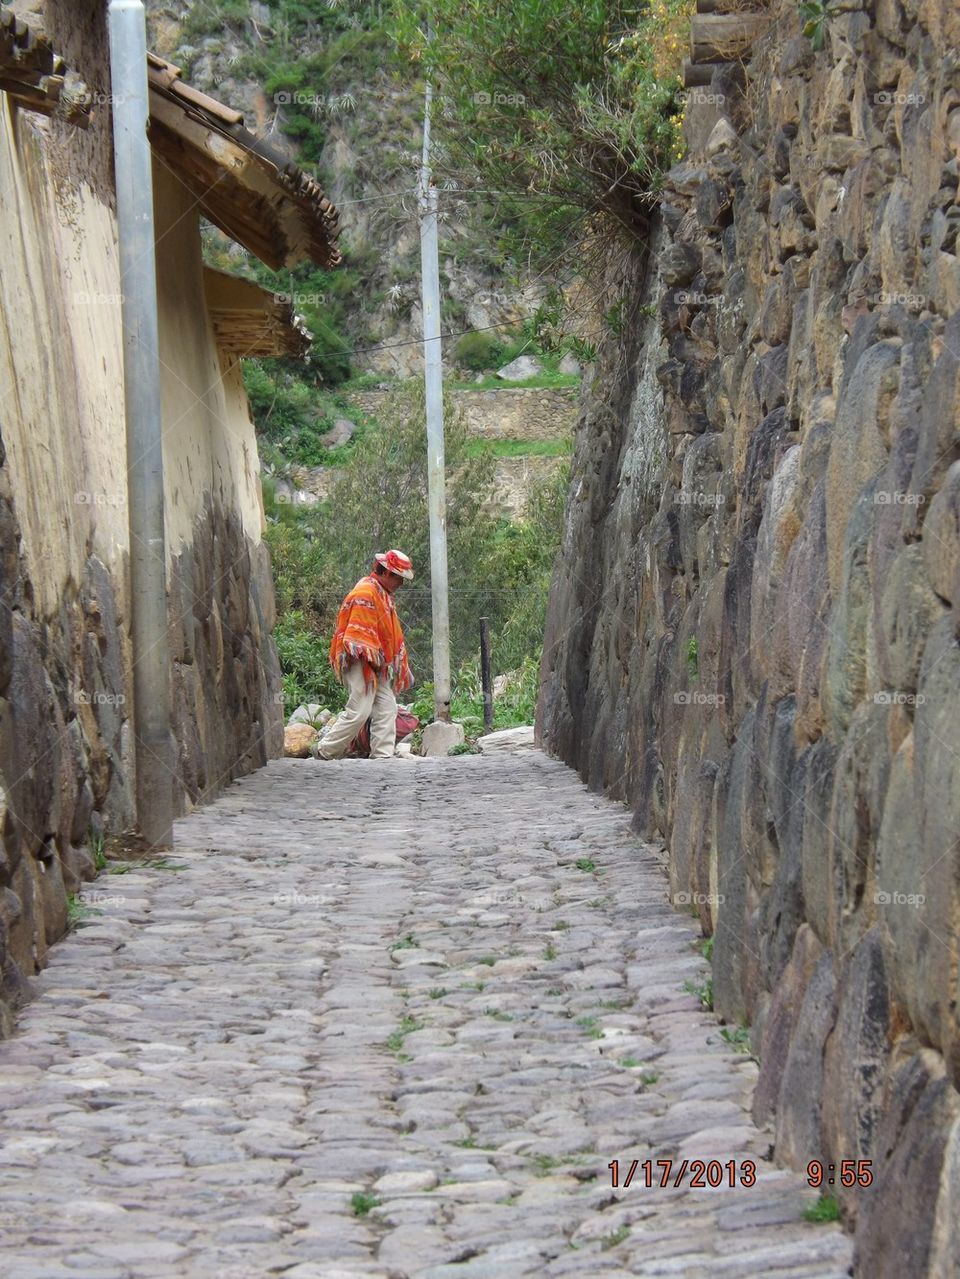 Peruvian man in alley